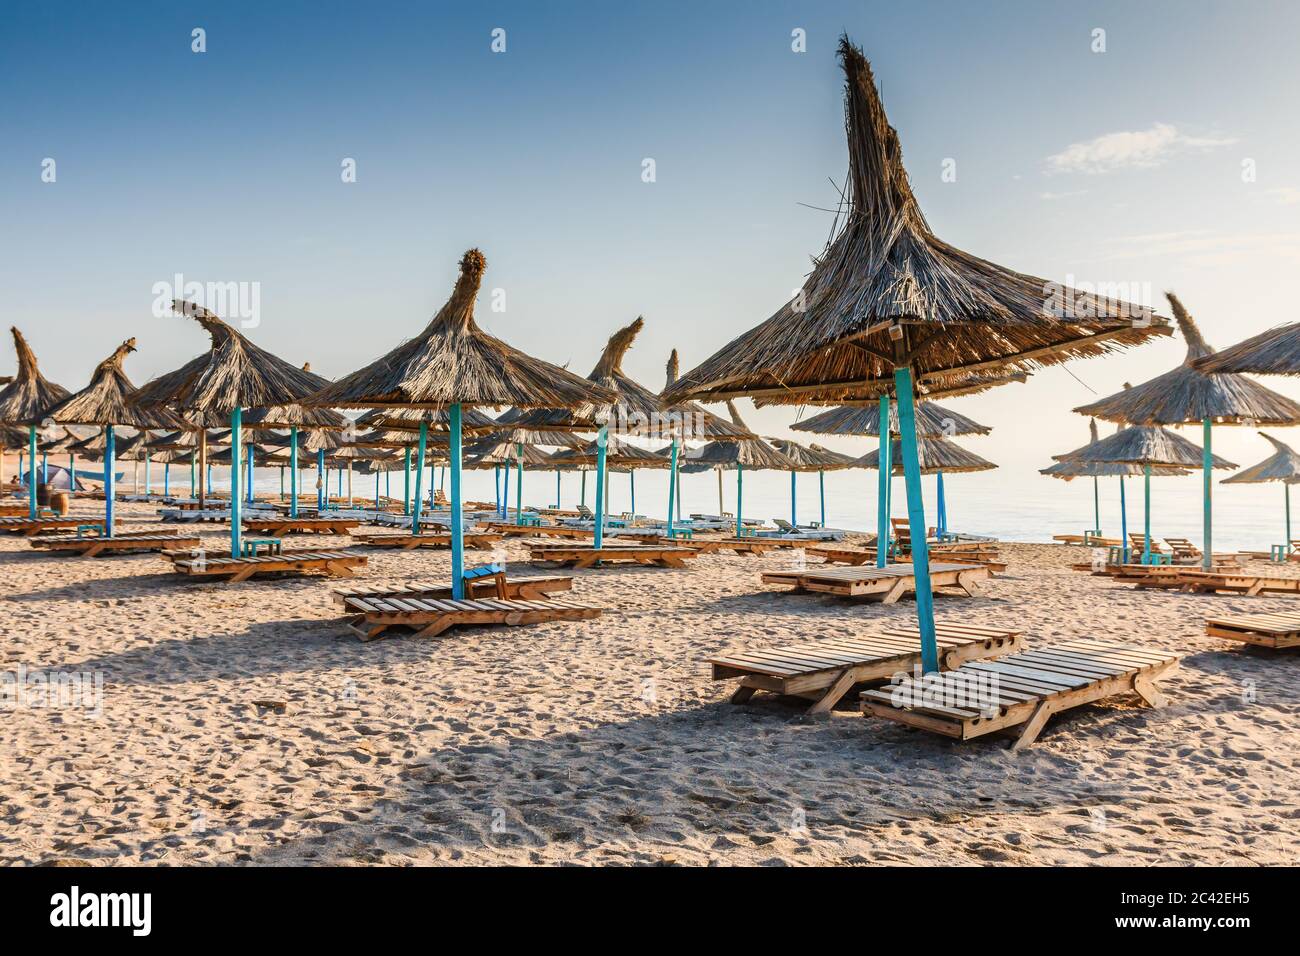 Black Sea, Romania. Straw umbrellas on the beach in Vama Veche village. Stock Photo